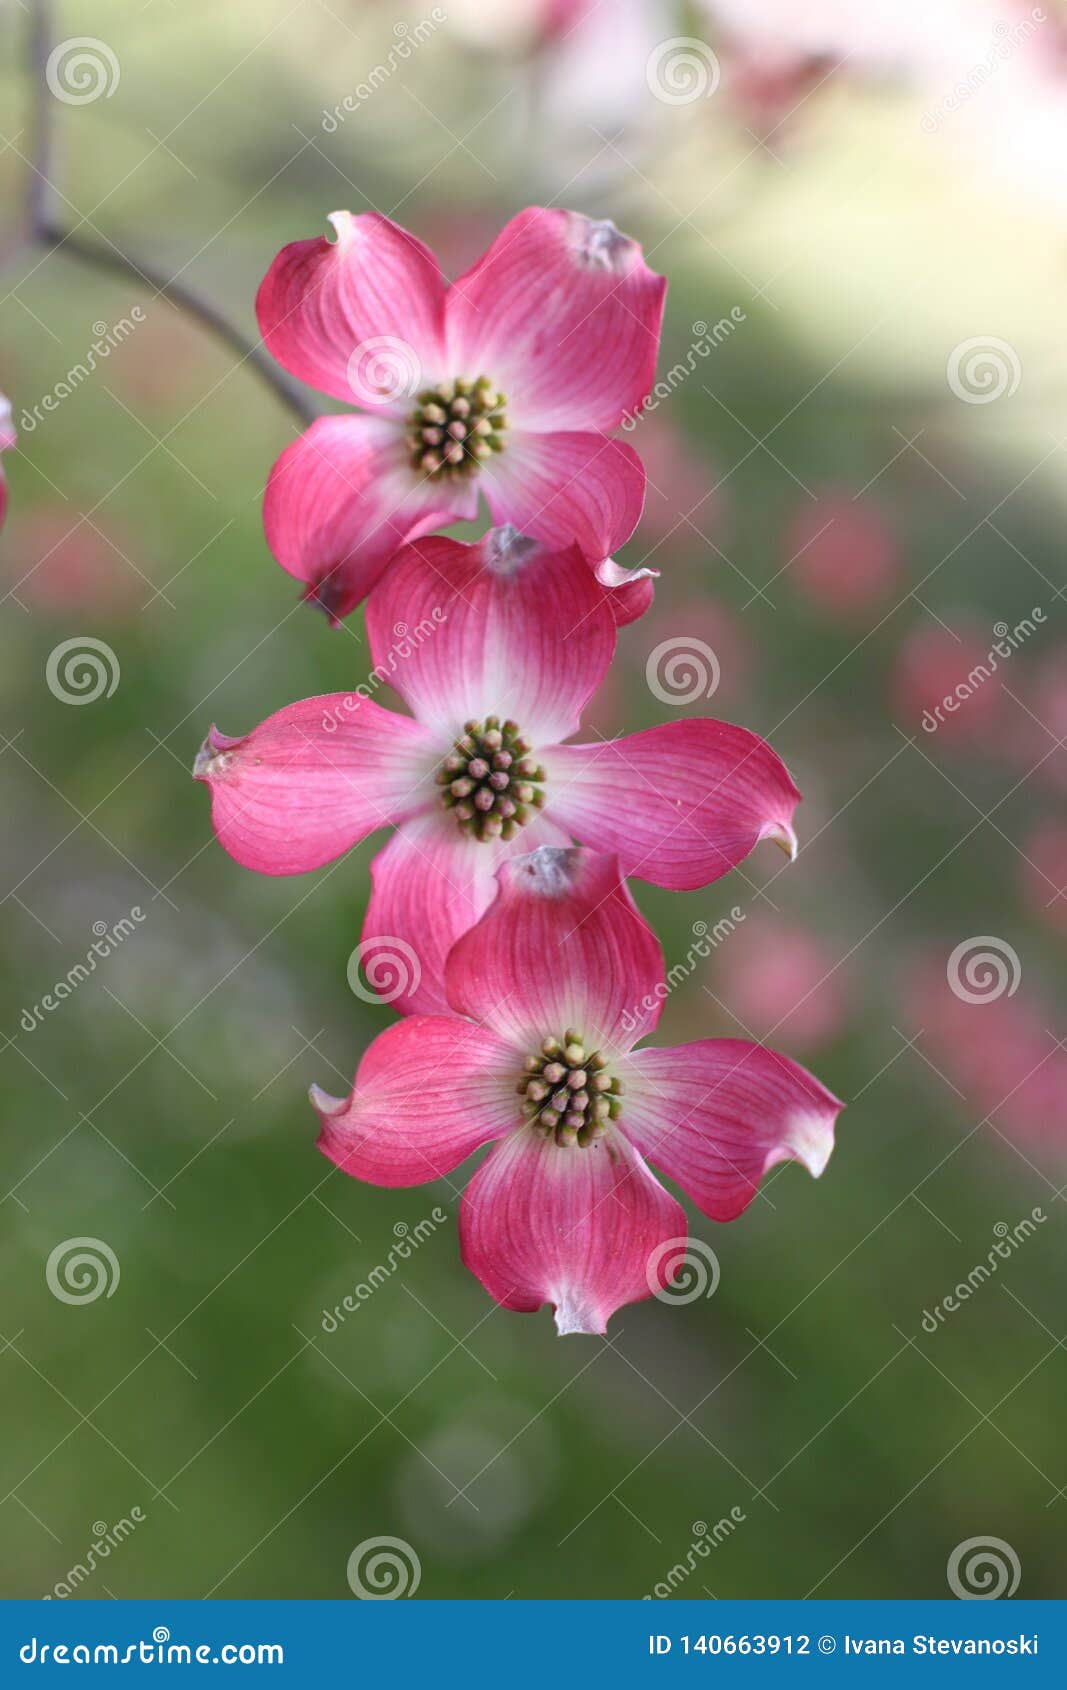 pink flowers of cornus florida forma rubra